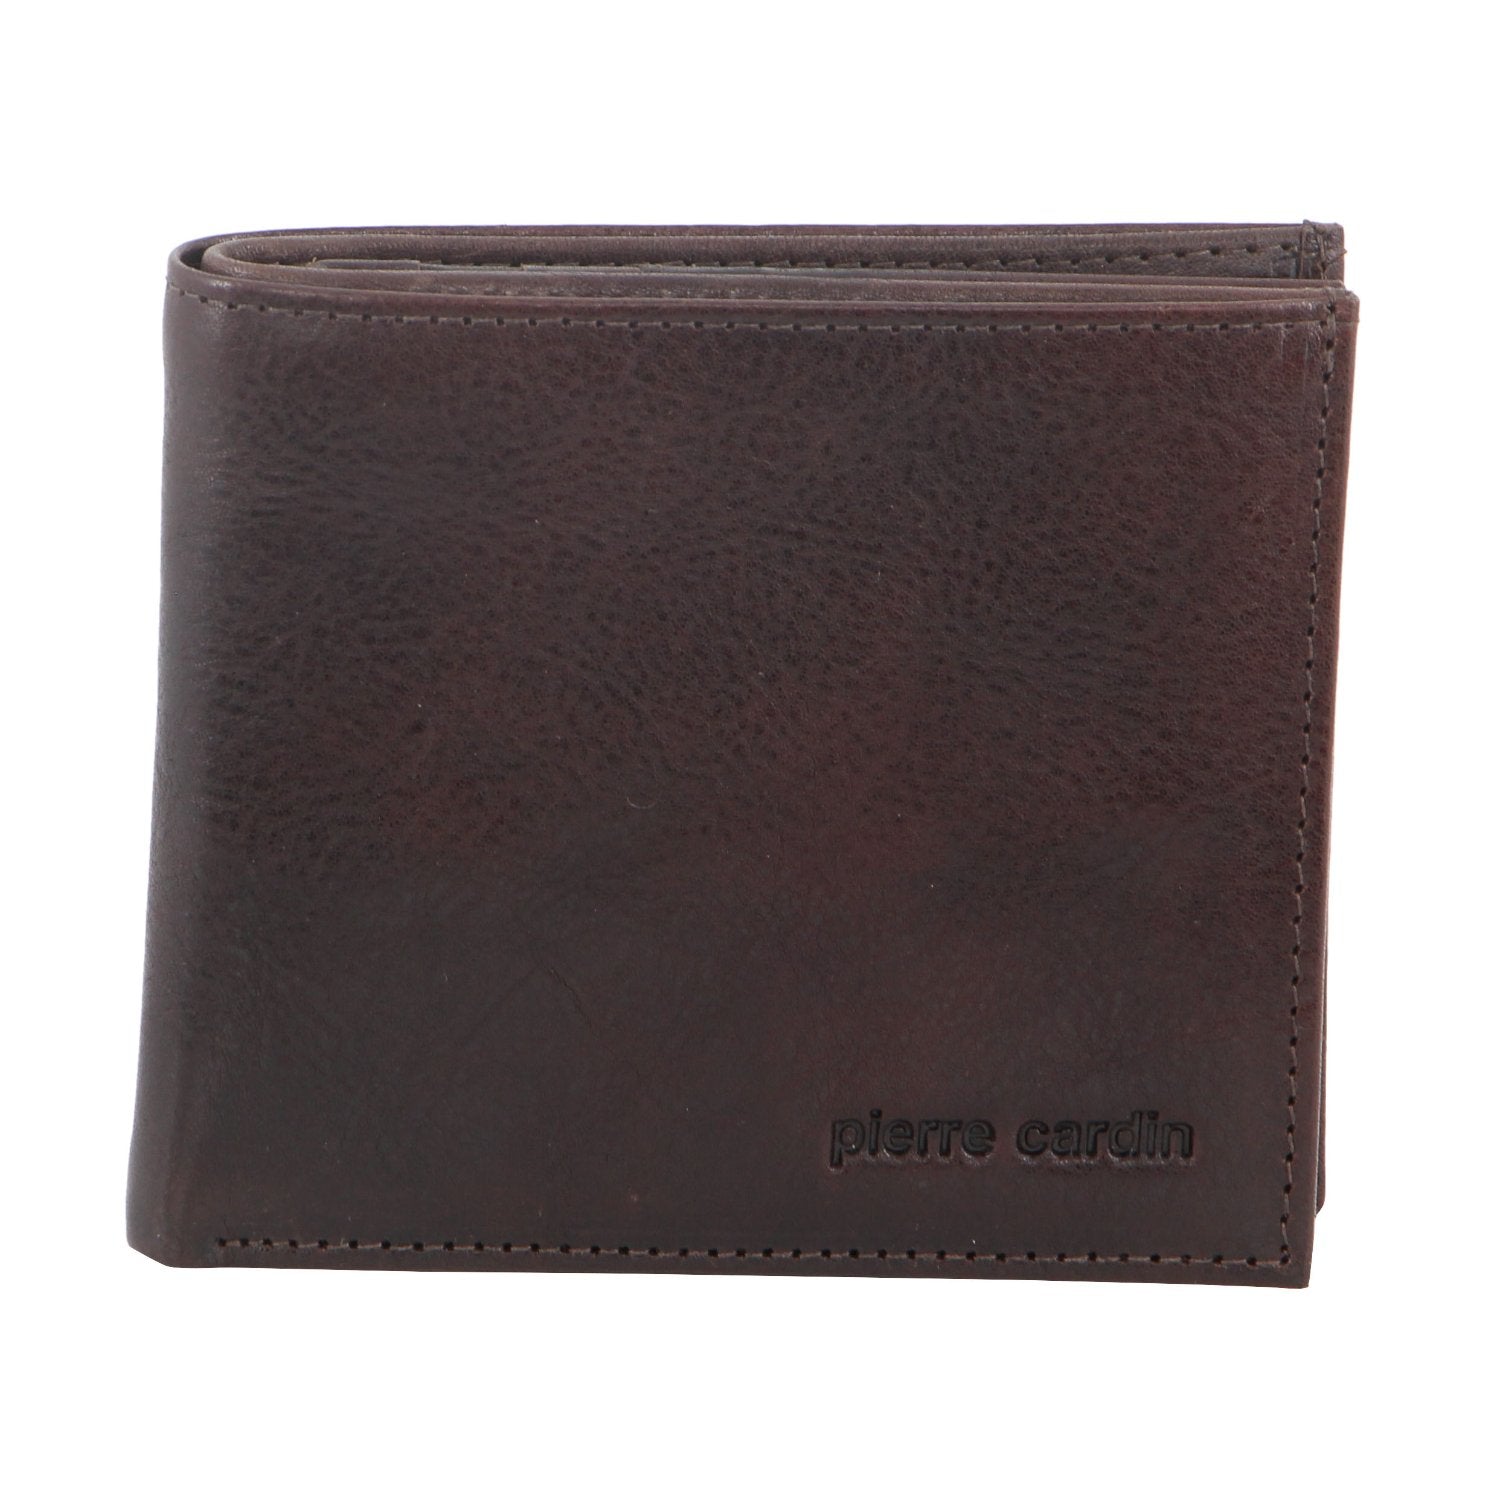 Pierre Cardin Italian Leather Tri-Fold Men's Wallet in Chocolate